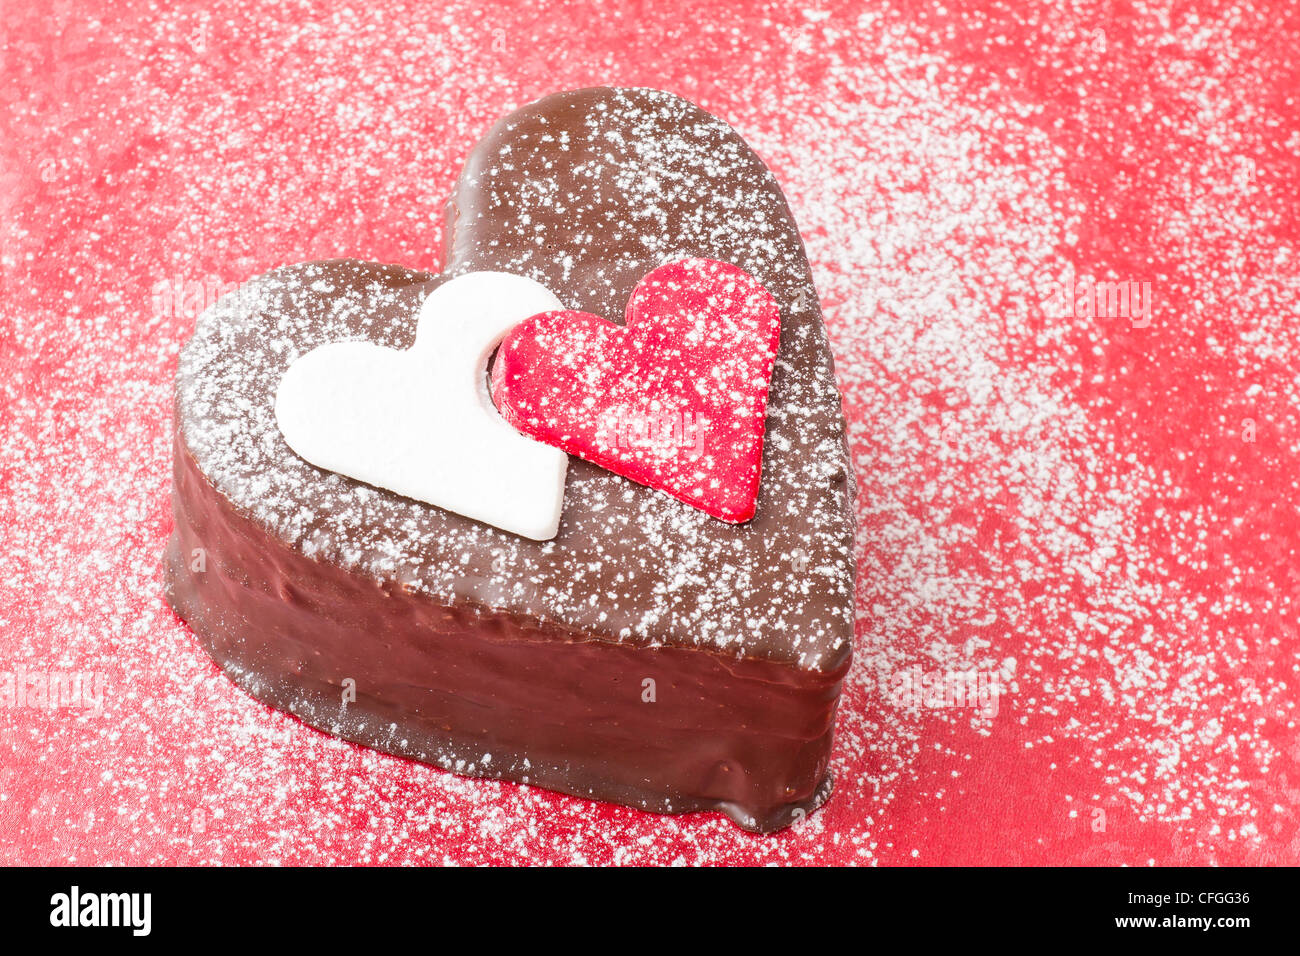 En forma de corazón una rebanada de pastel de chocolate sobre fondo rojo. Foto de stock